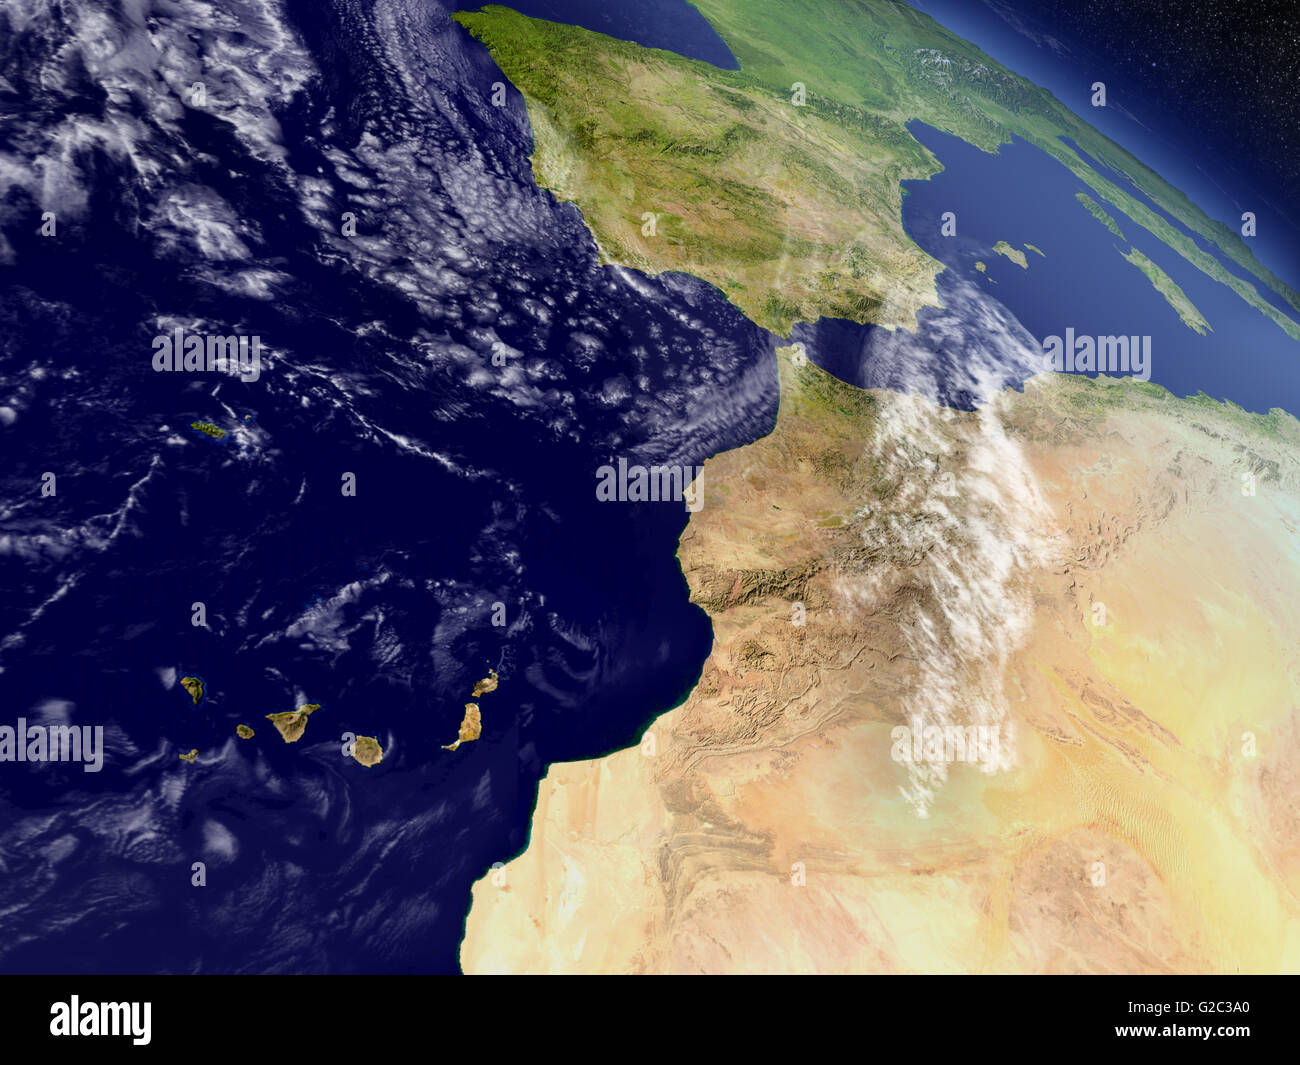 Le Maroc avec la région environnante comme vu de l'orbite de la Terre dans l'espace. Illustration 3D très détaillées avec planète réaliste surfa Banque D'Images